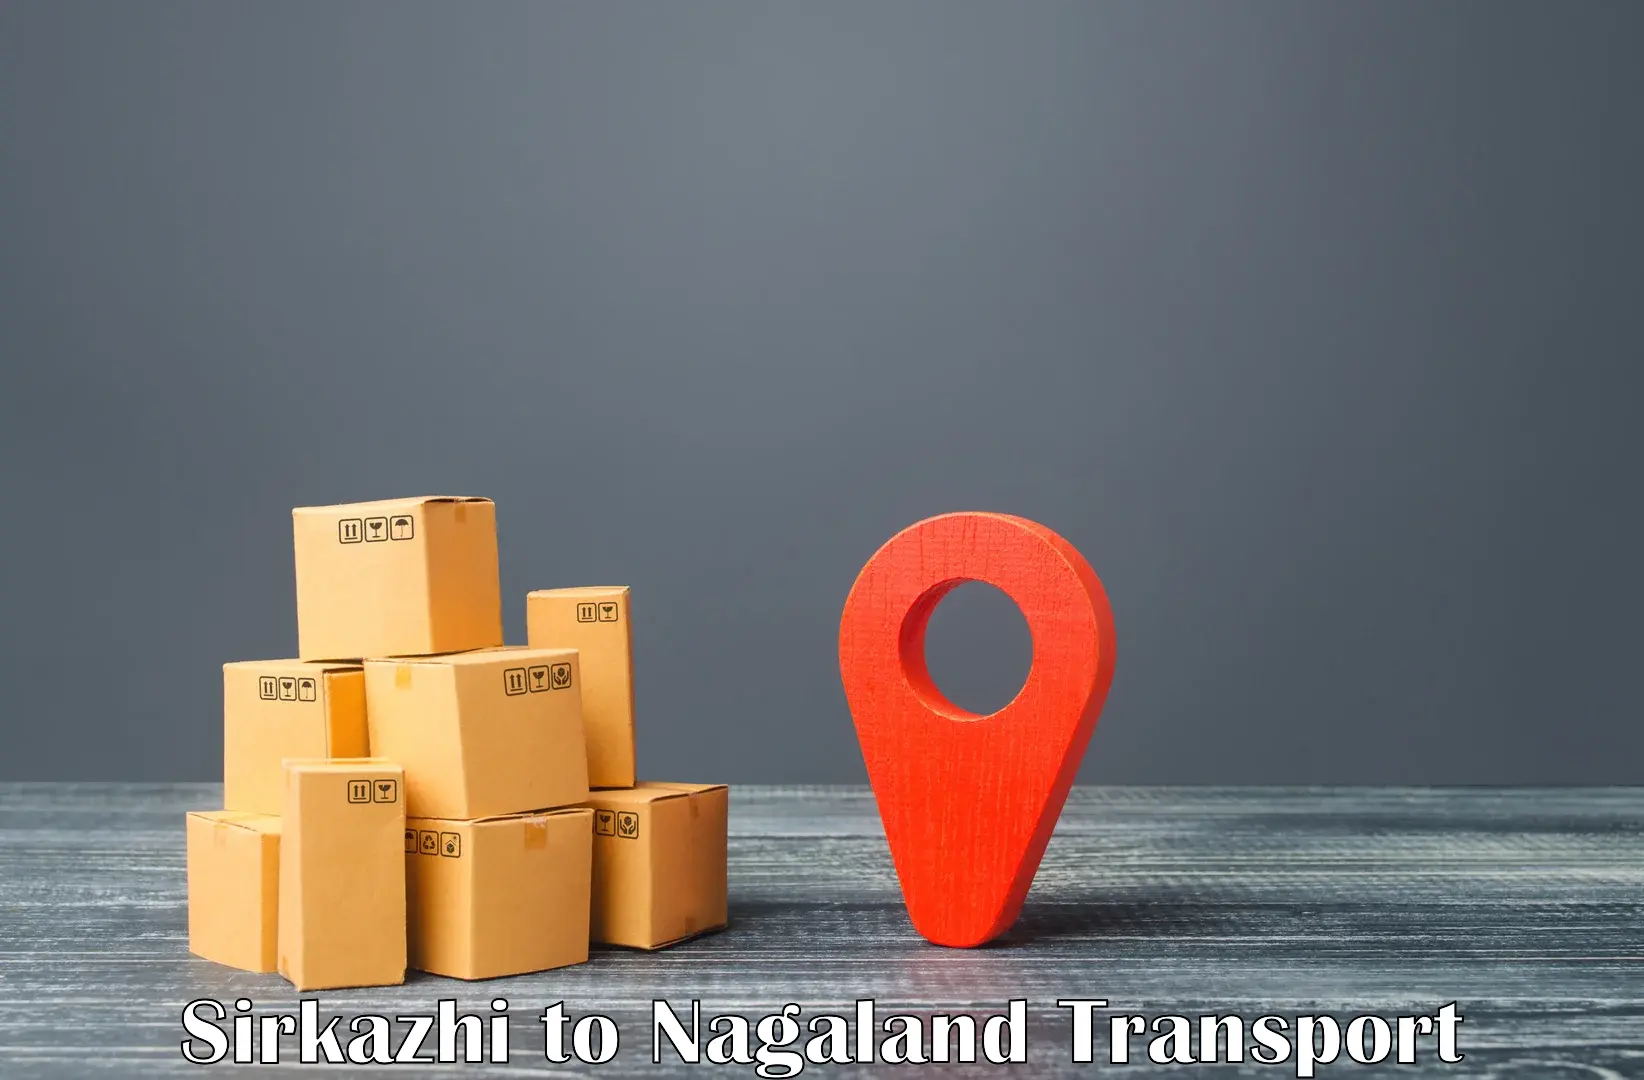 Interstate transport services Sirkazhi to Nagaland